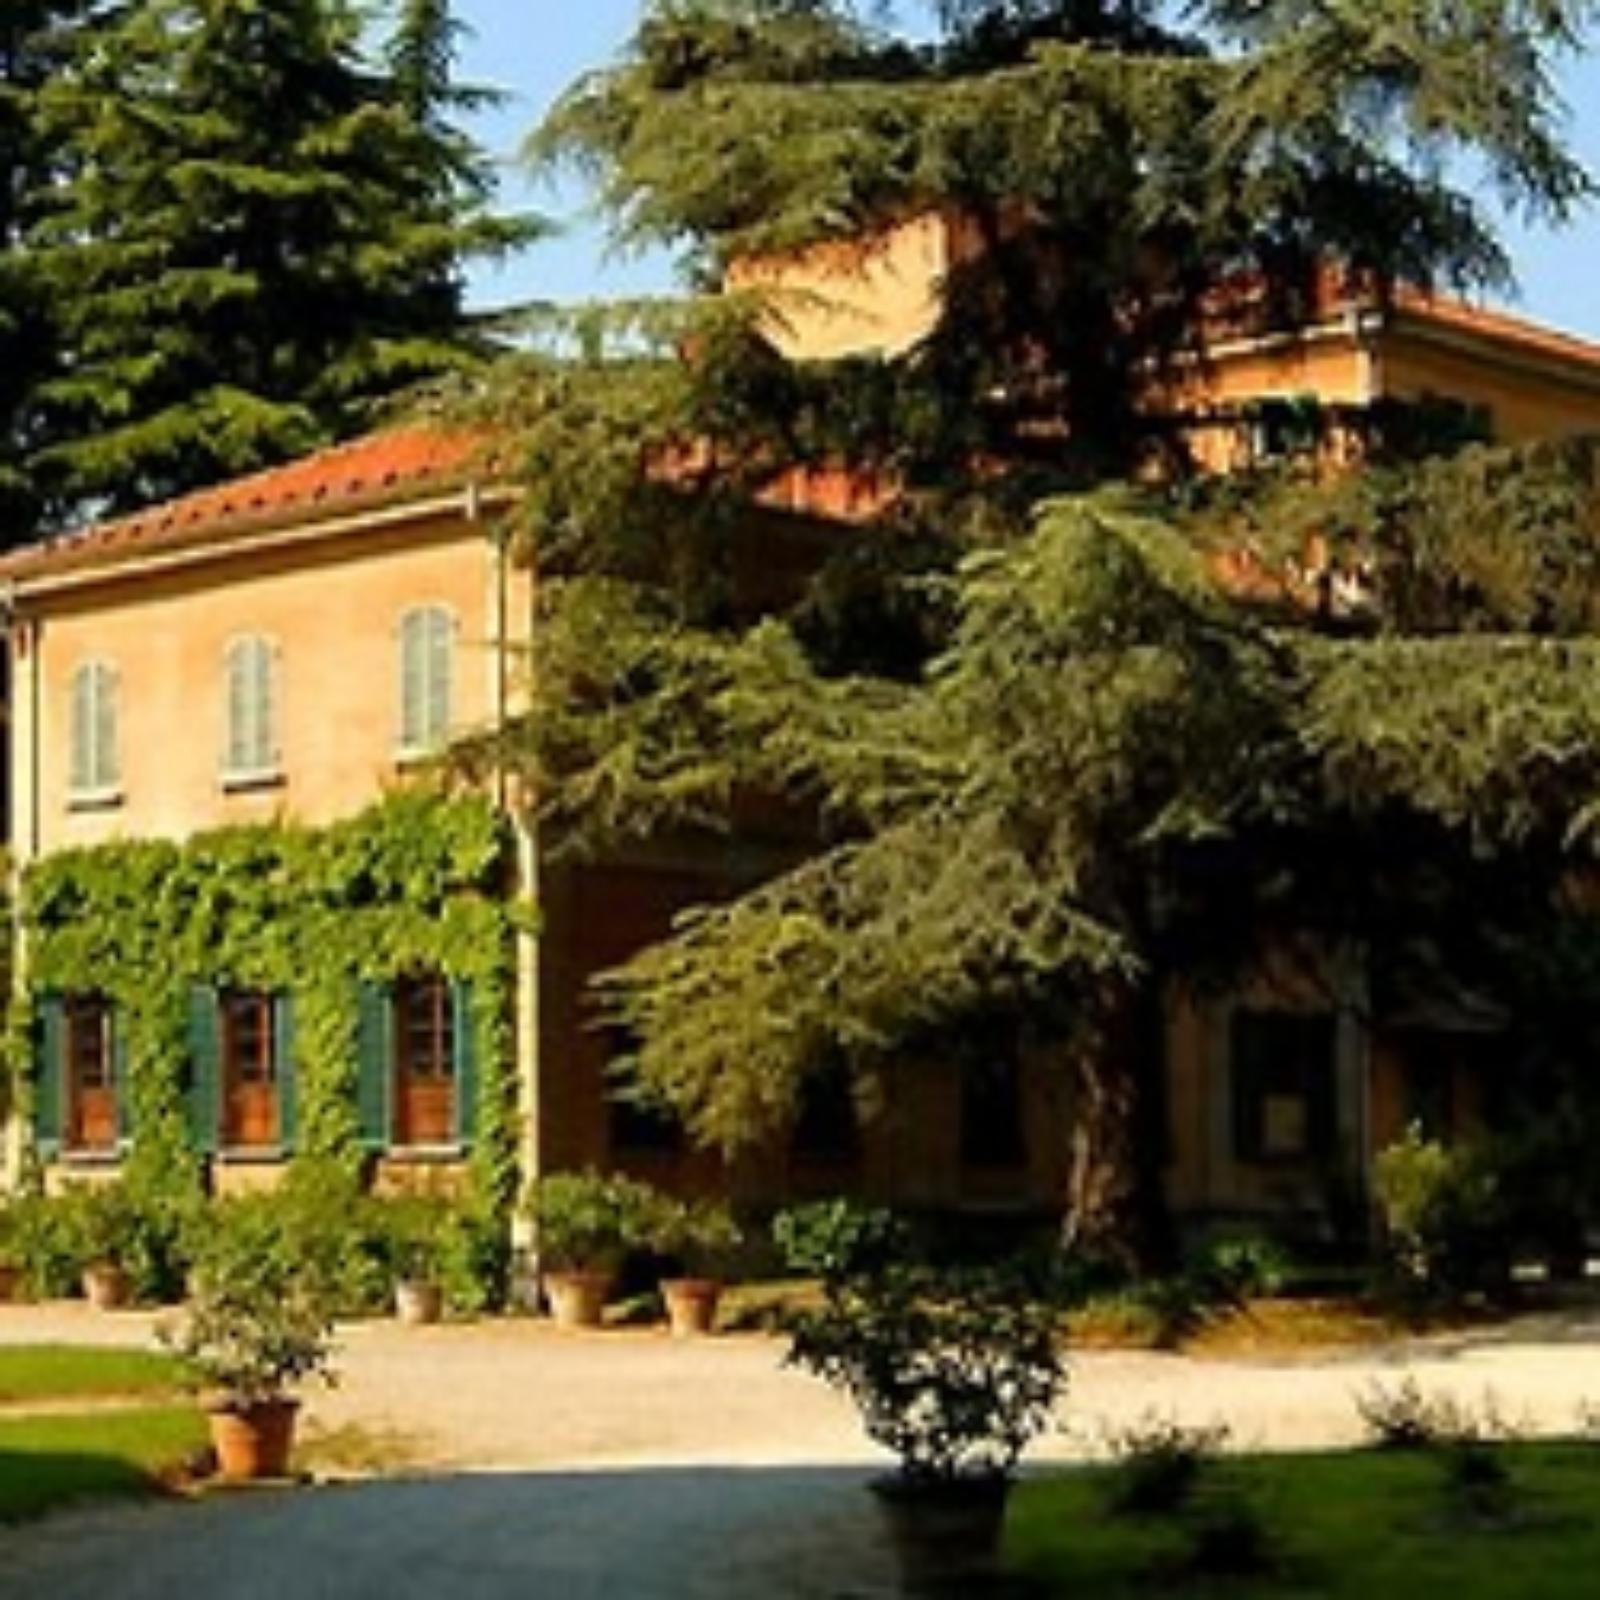 A wine farm owned by the Visconti di Modrone 